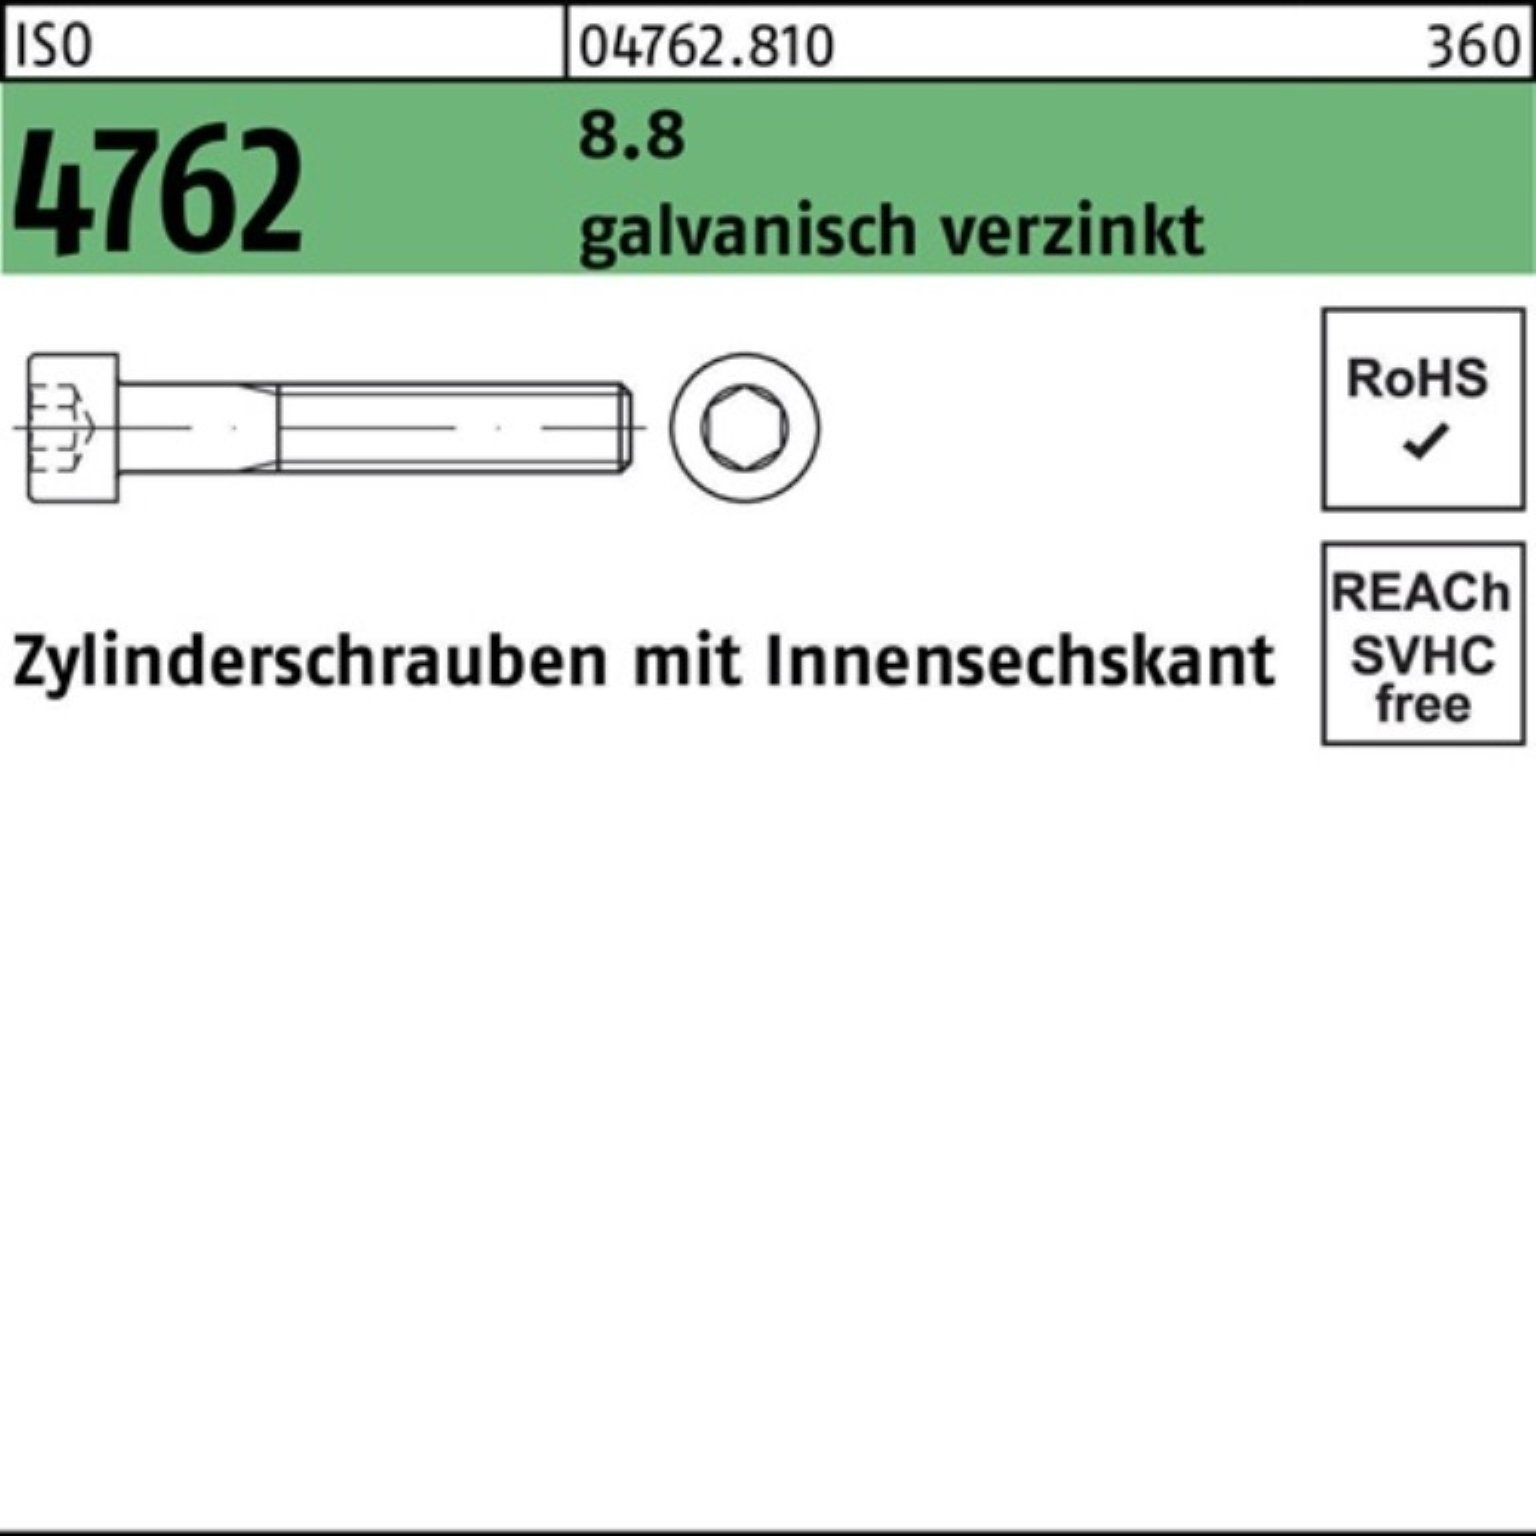 Zylinderschraube Zylinderschraube 8.8 M20x200 Reyher Innen-6kt 100er 4762 galv.verz. ISO Pack